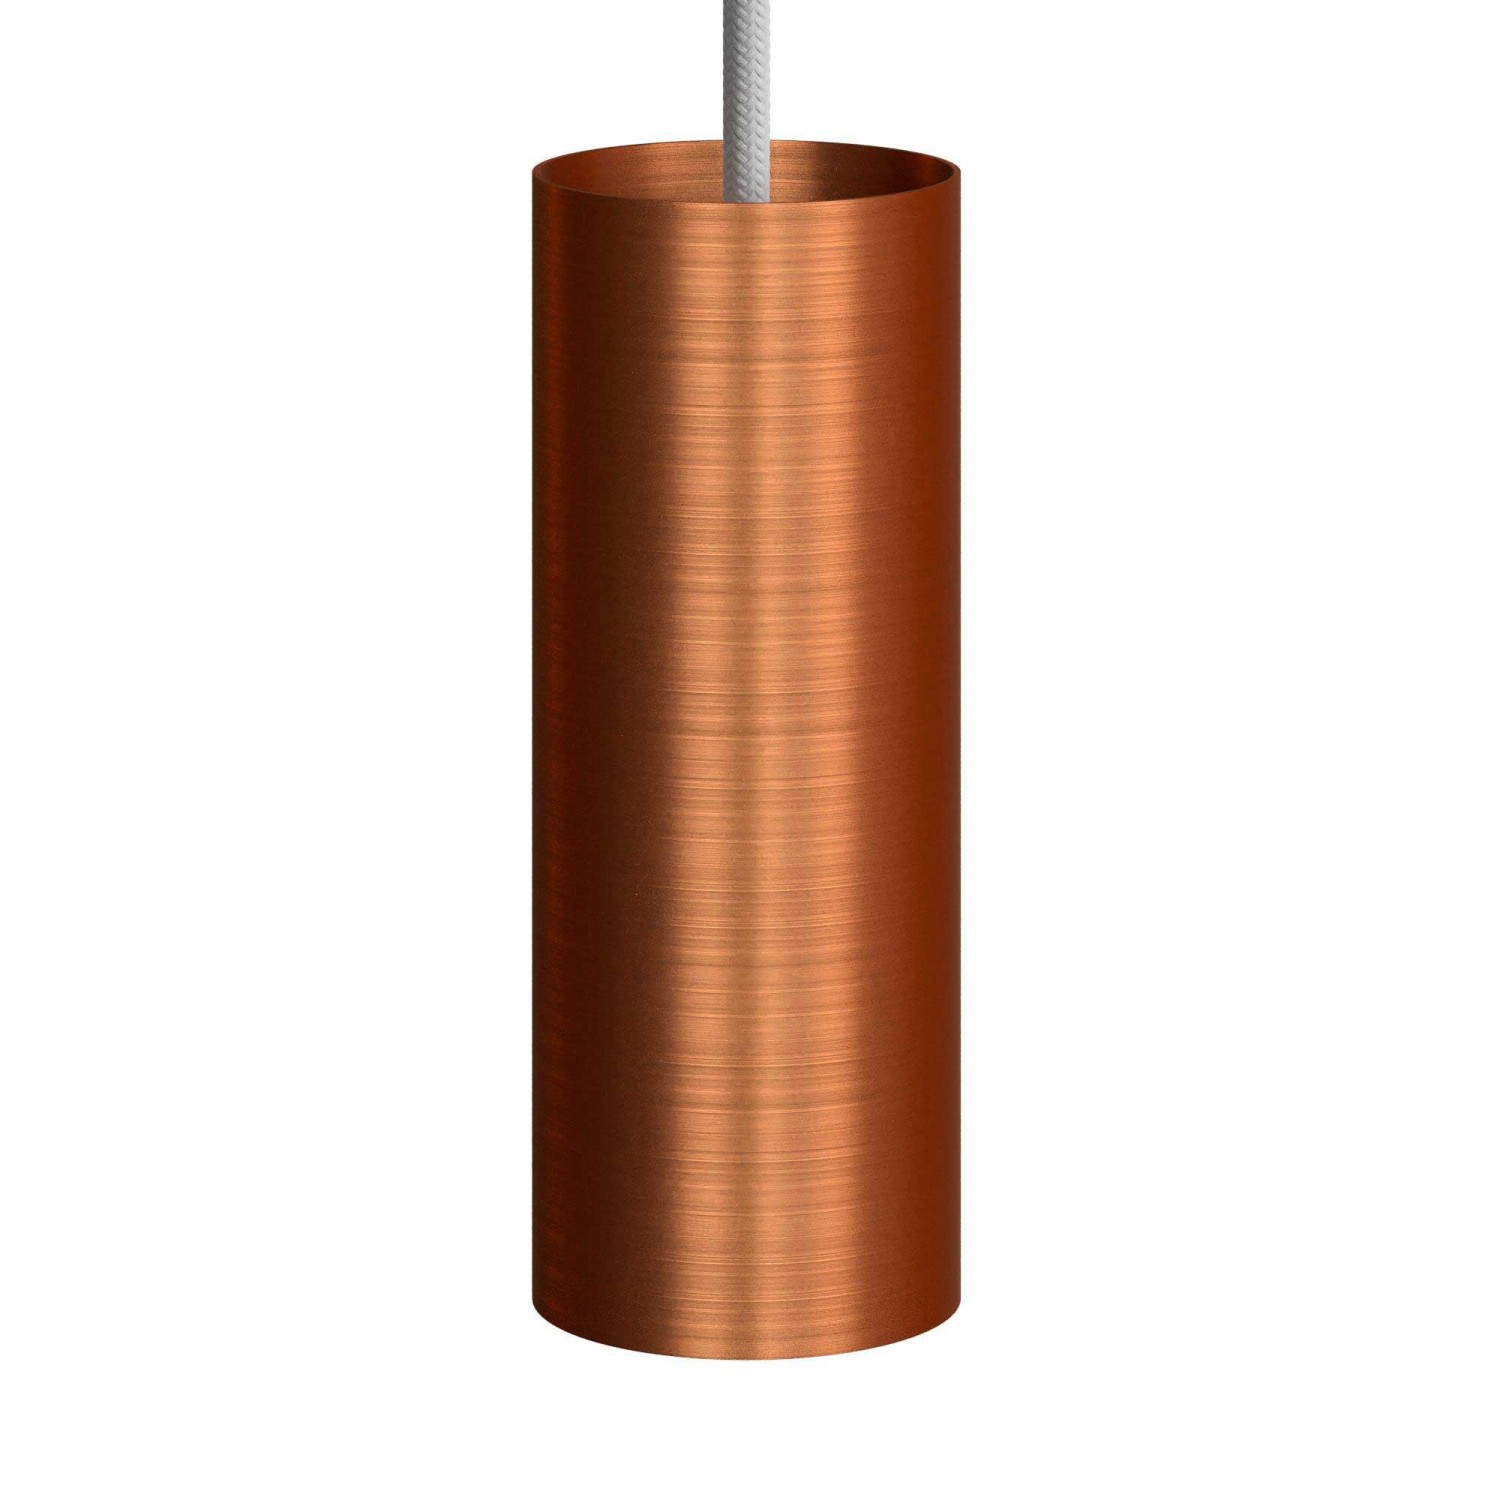 Suspension avec câble textile, abat-jour Tub-E14 et finition en métal - Made in Italy